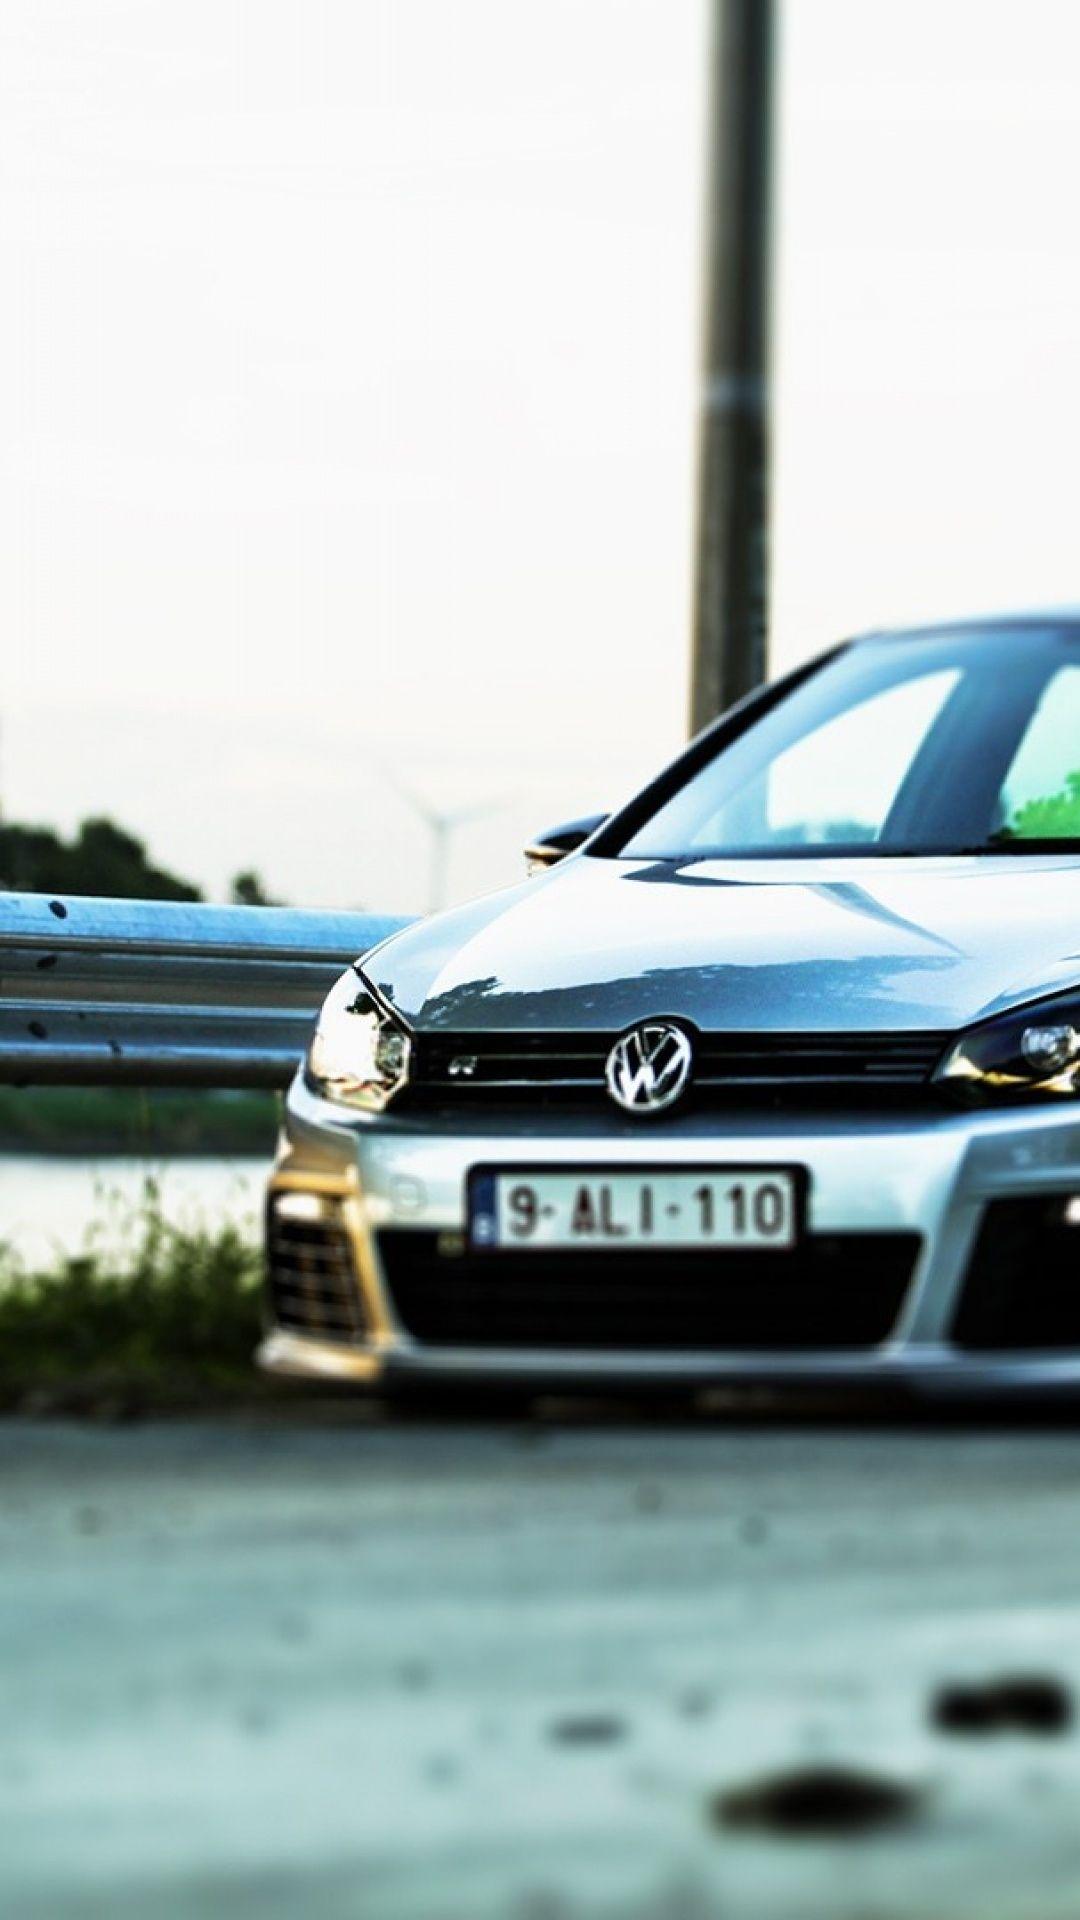 Volkswagen Golf iPhone 5 Wallpaper Best